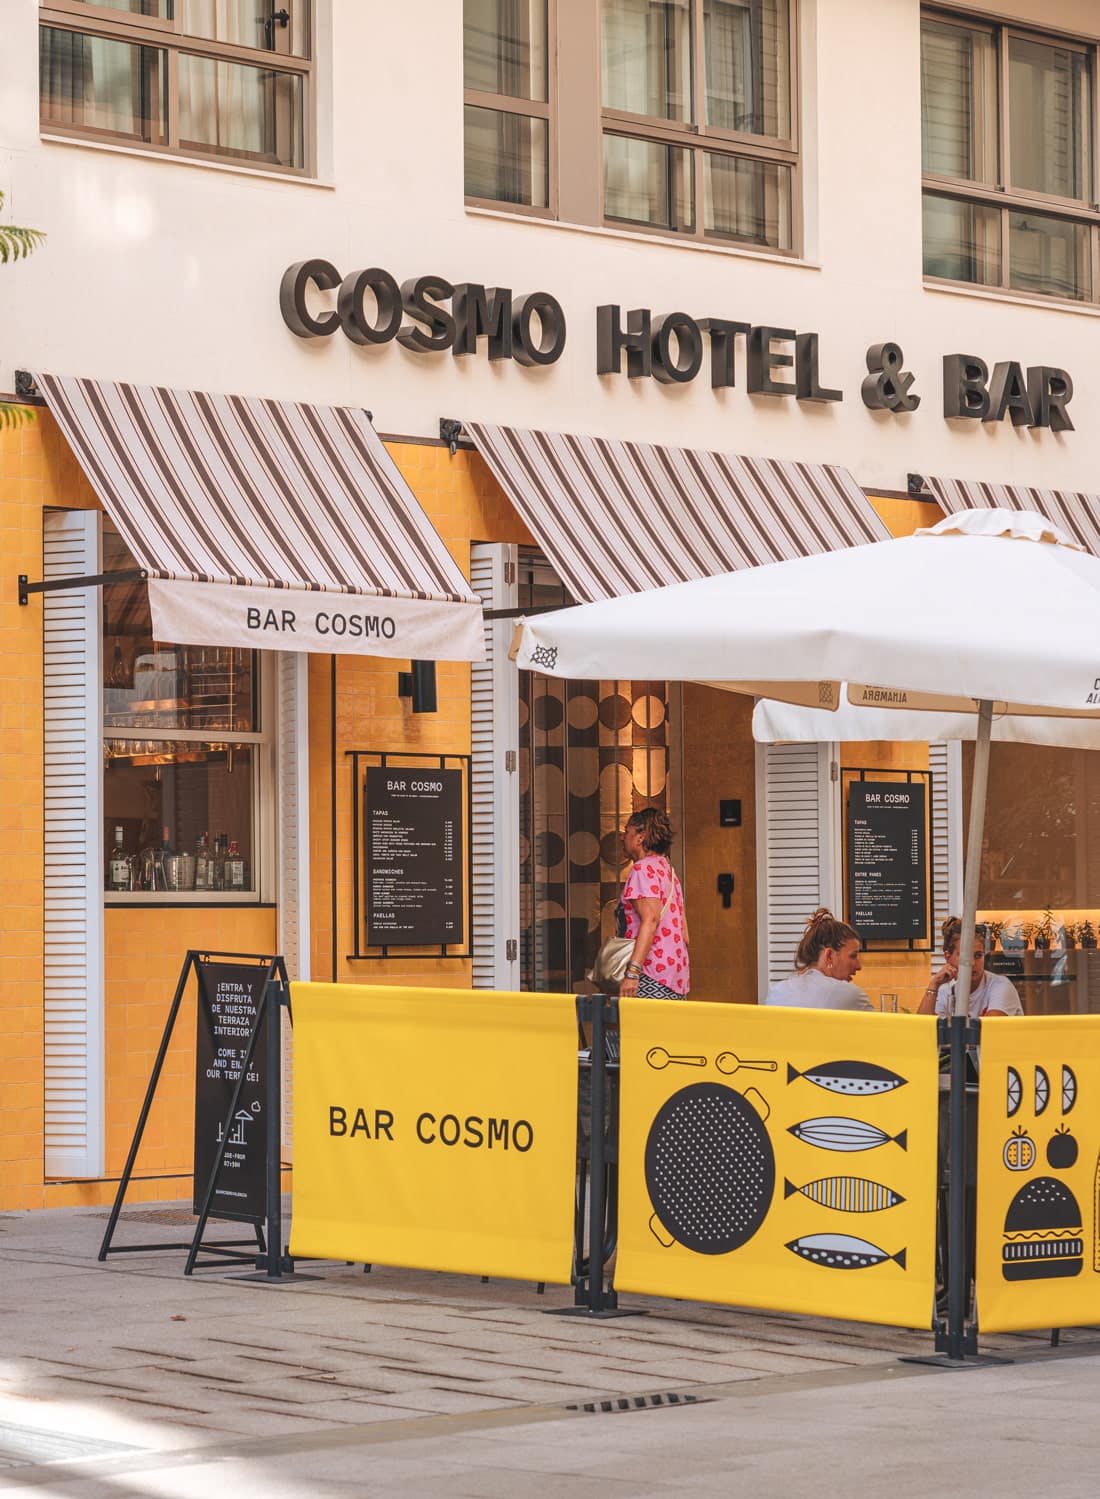 Cosmo Hotel and Bar, Valencia